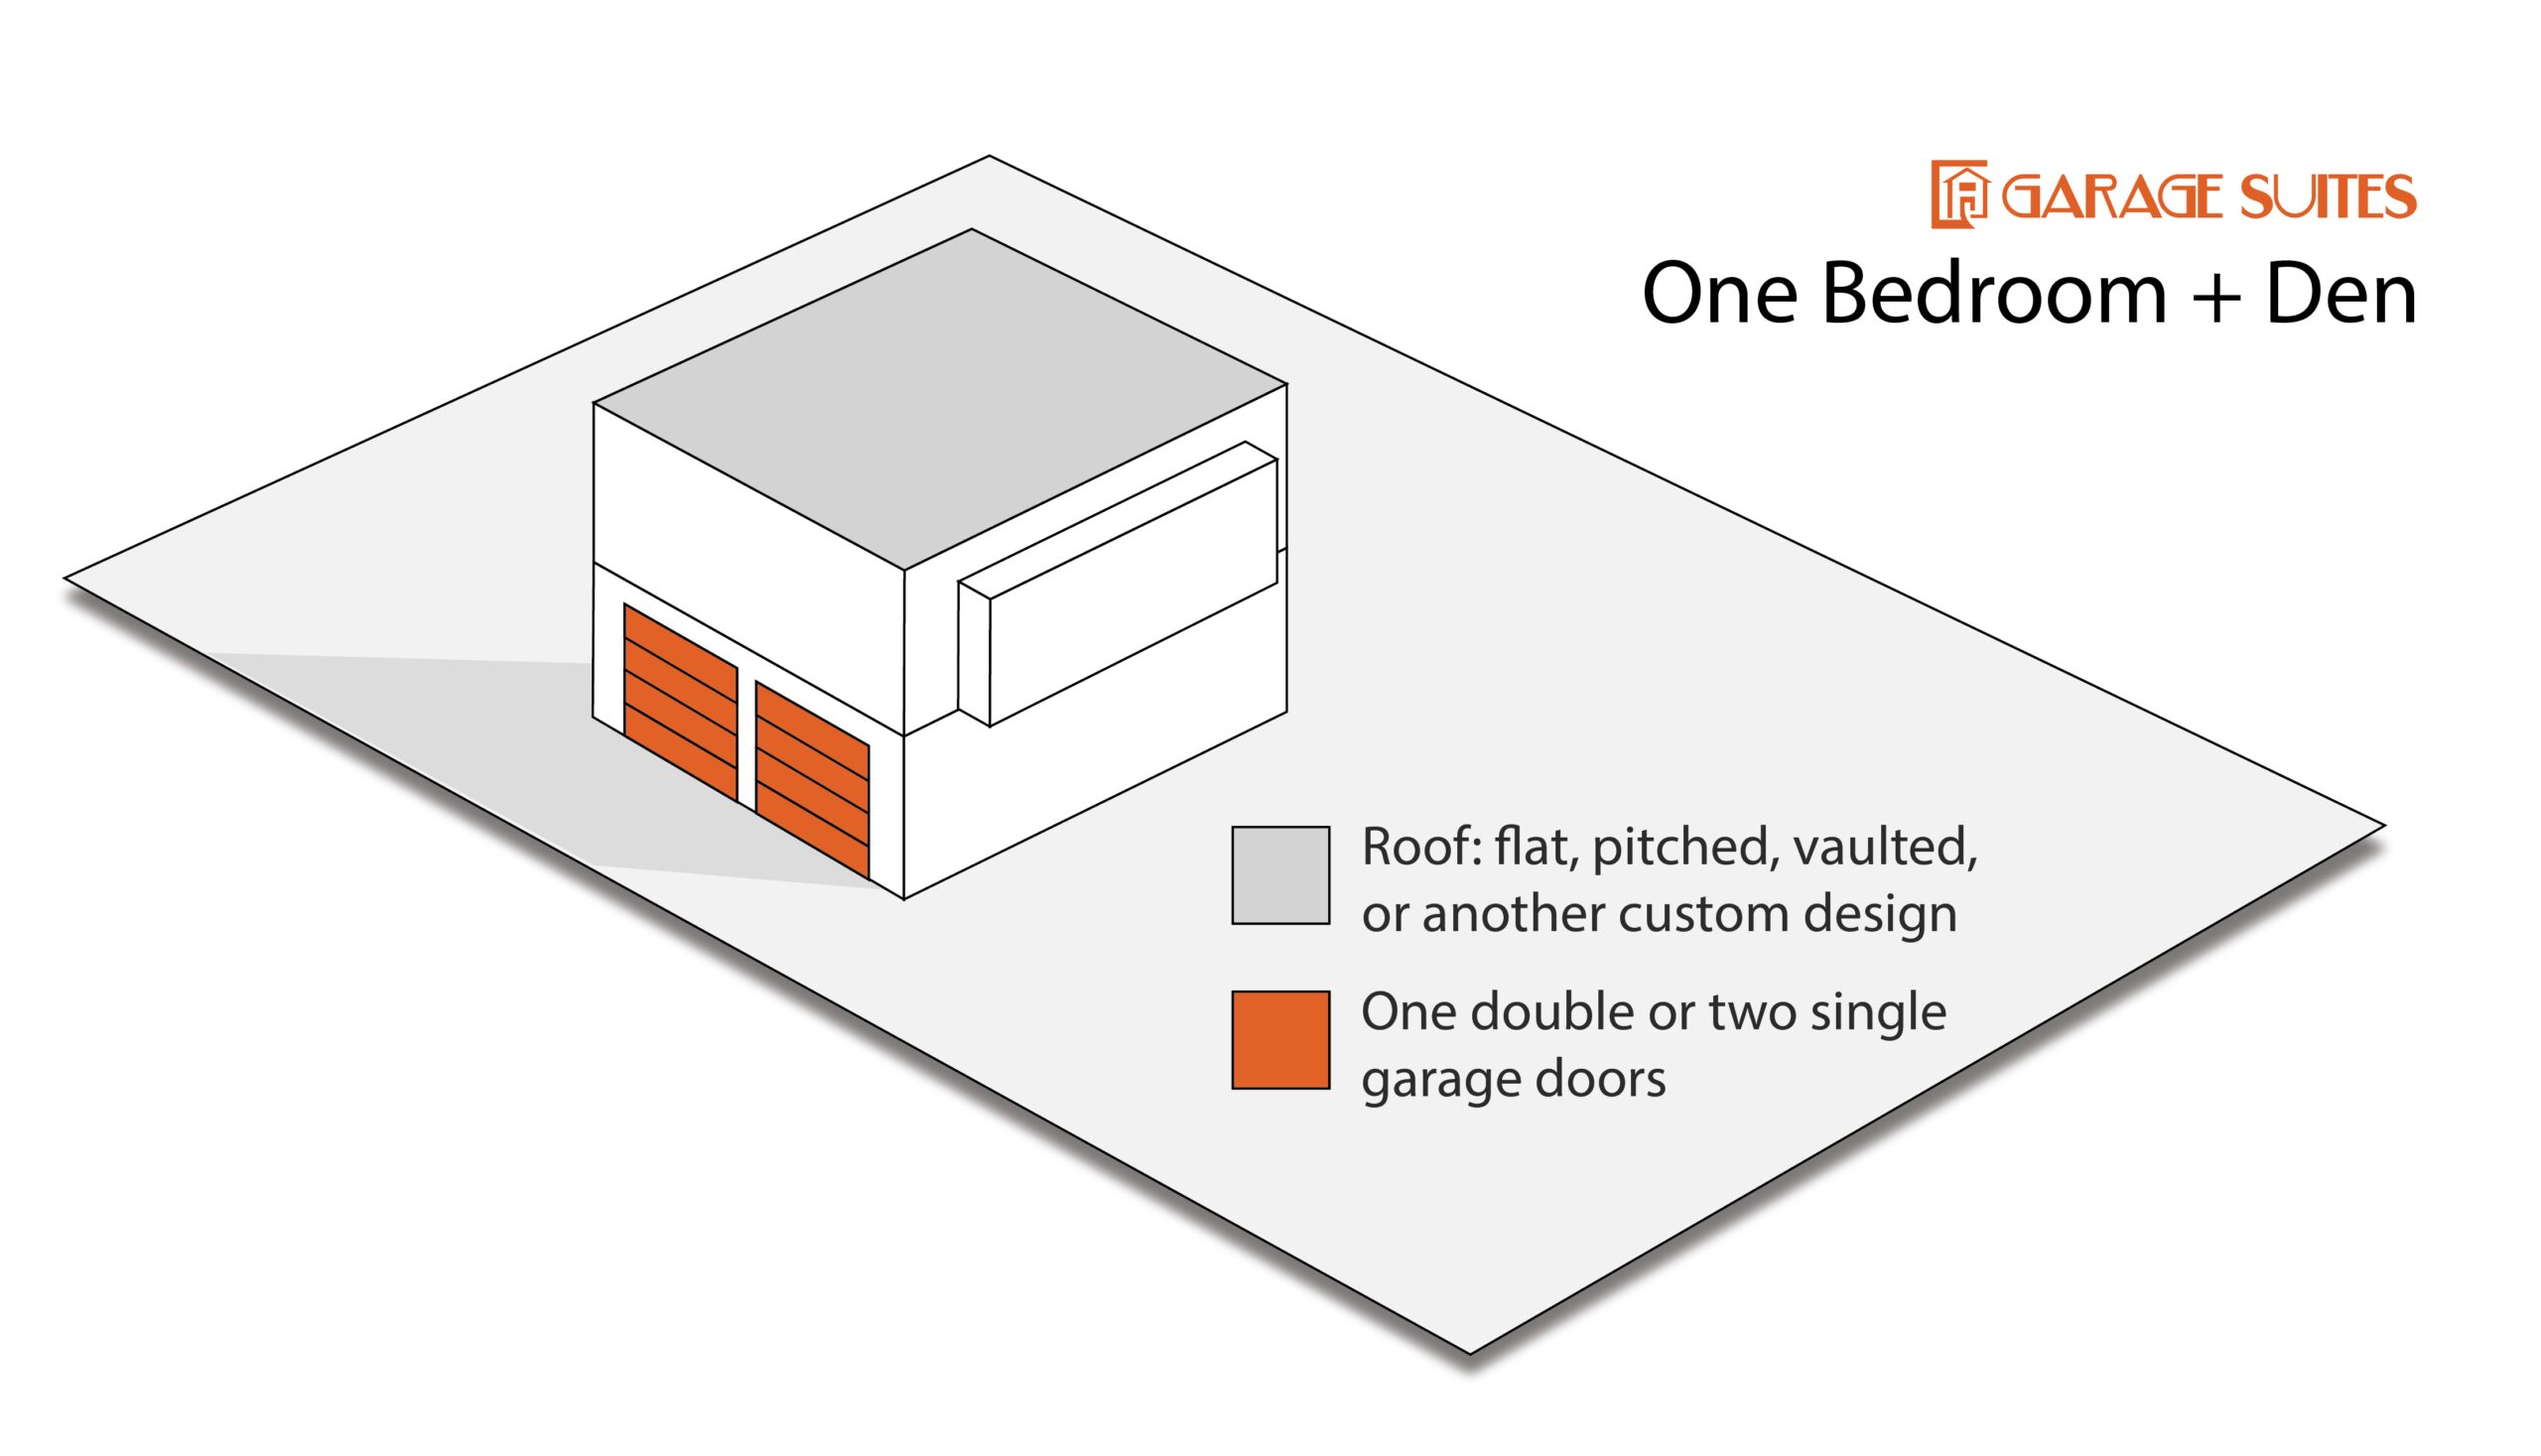 Garage Suite Configuration - One Bedroom + Den